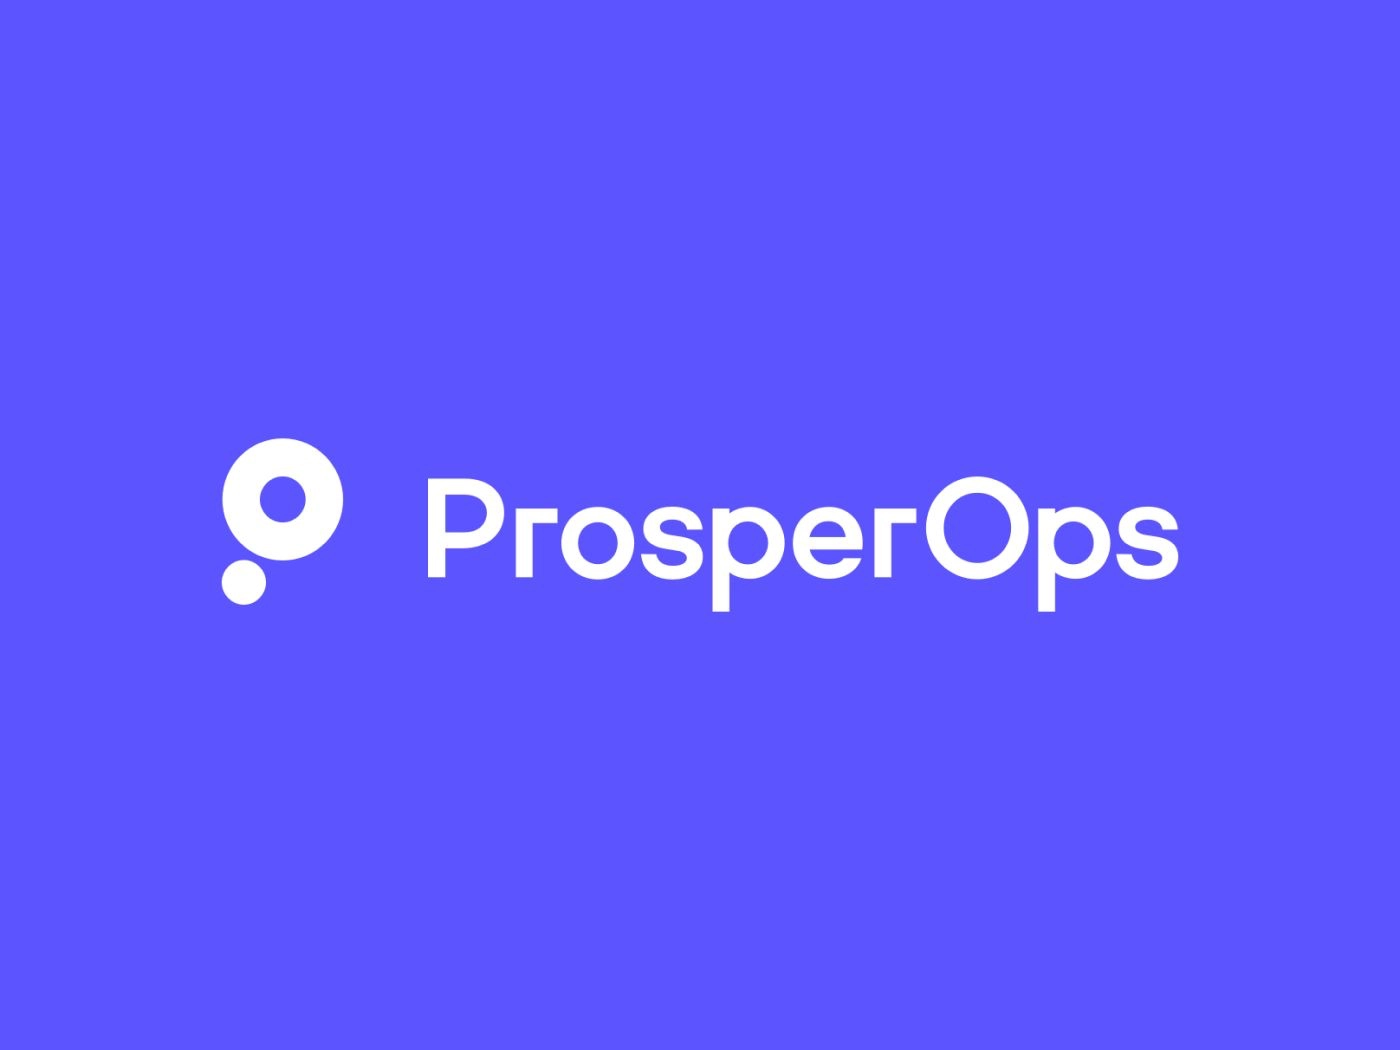 ProsperOps